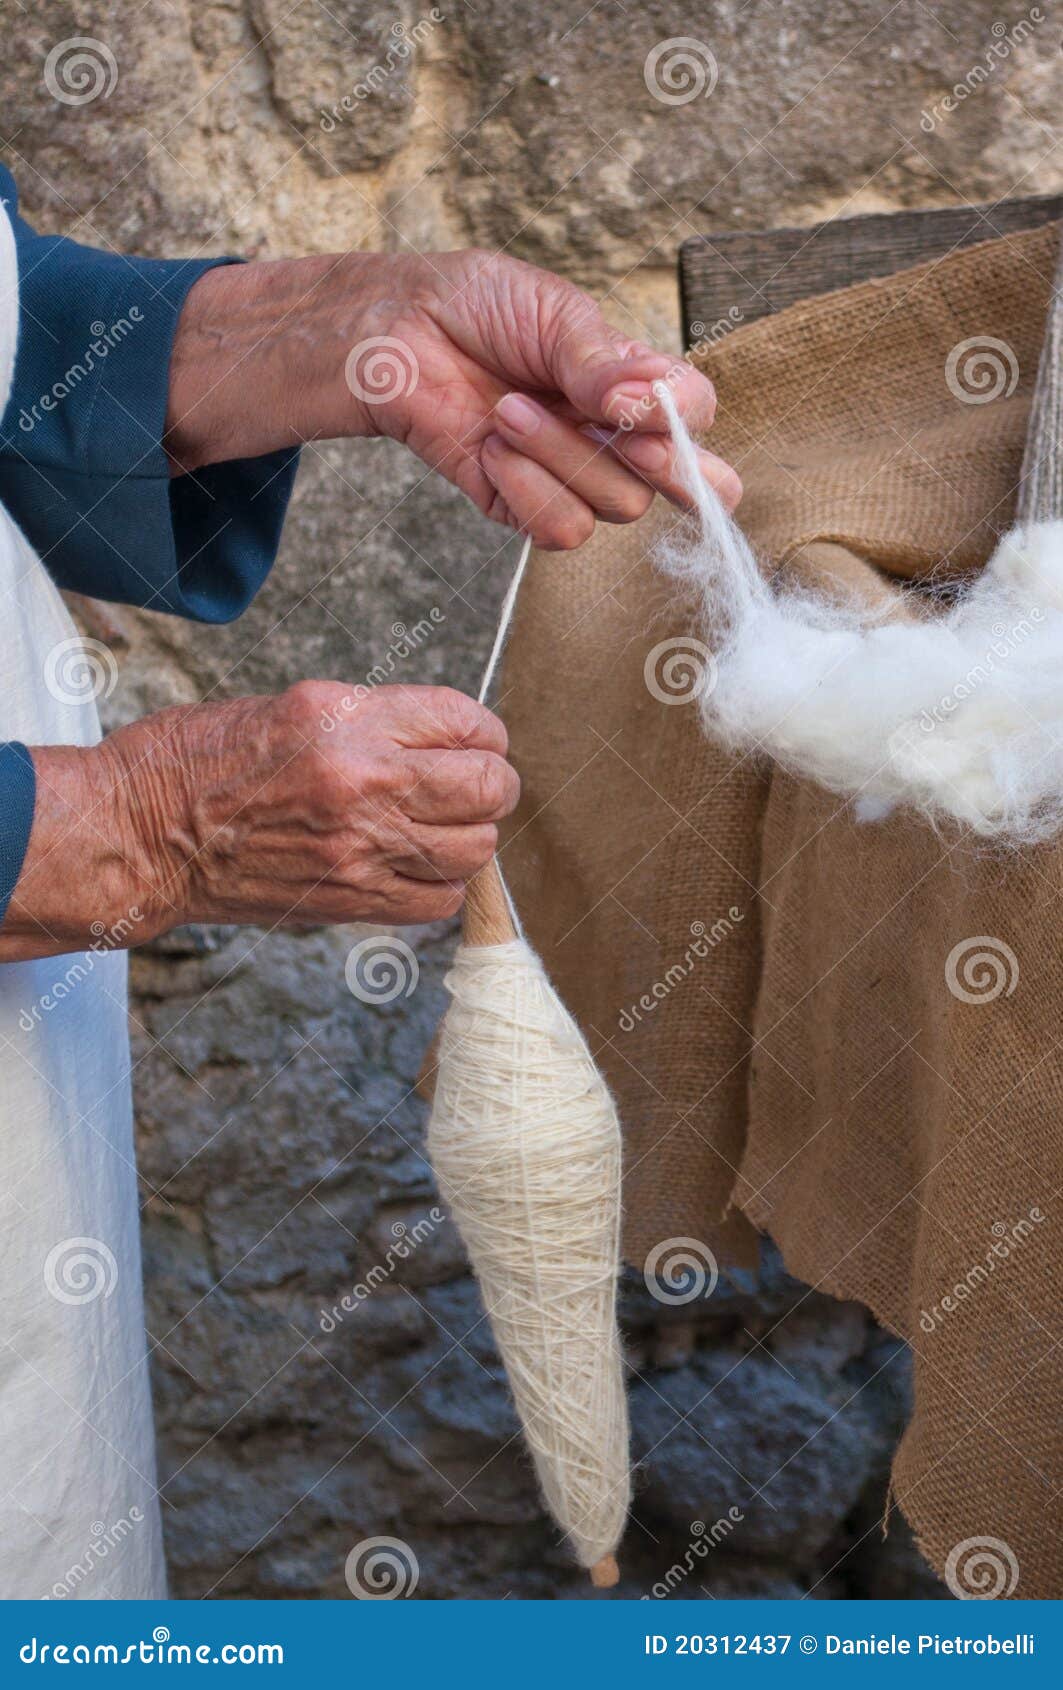 wool work